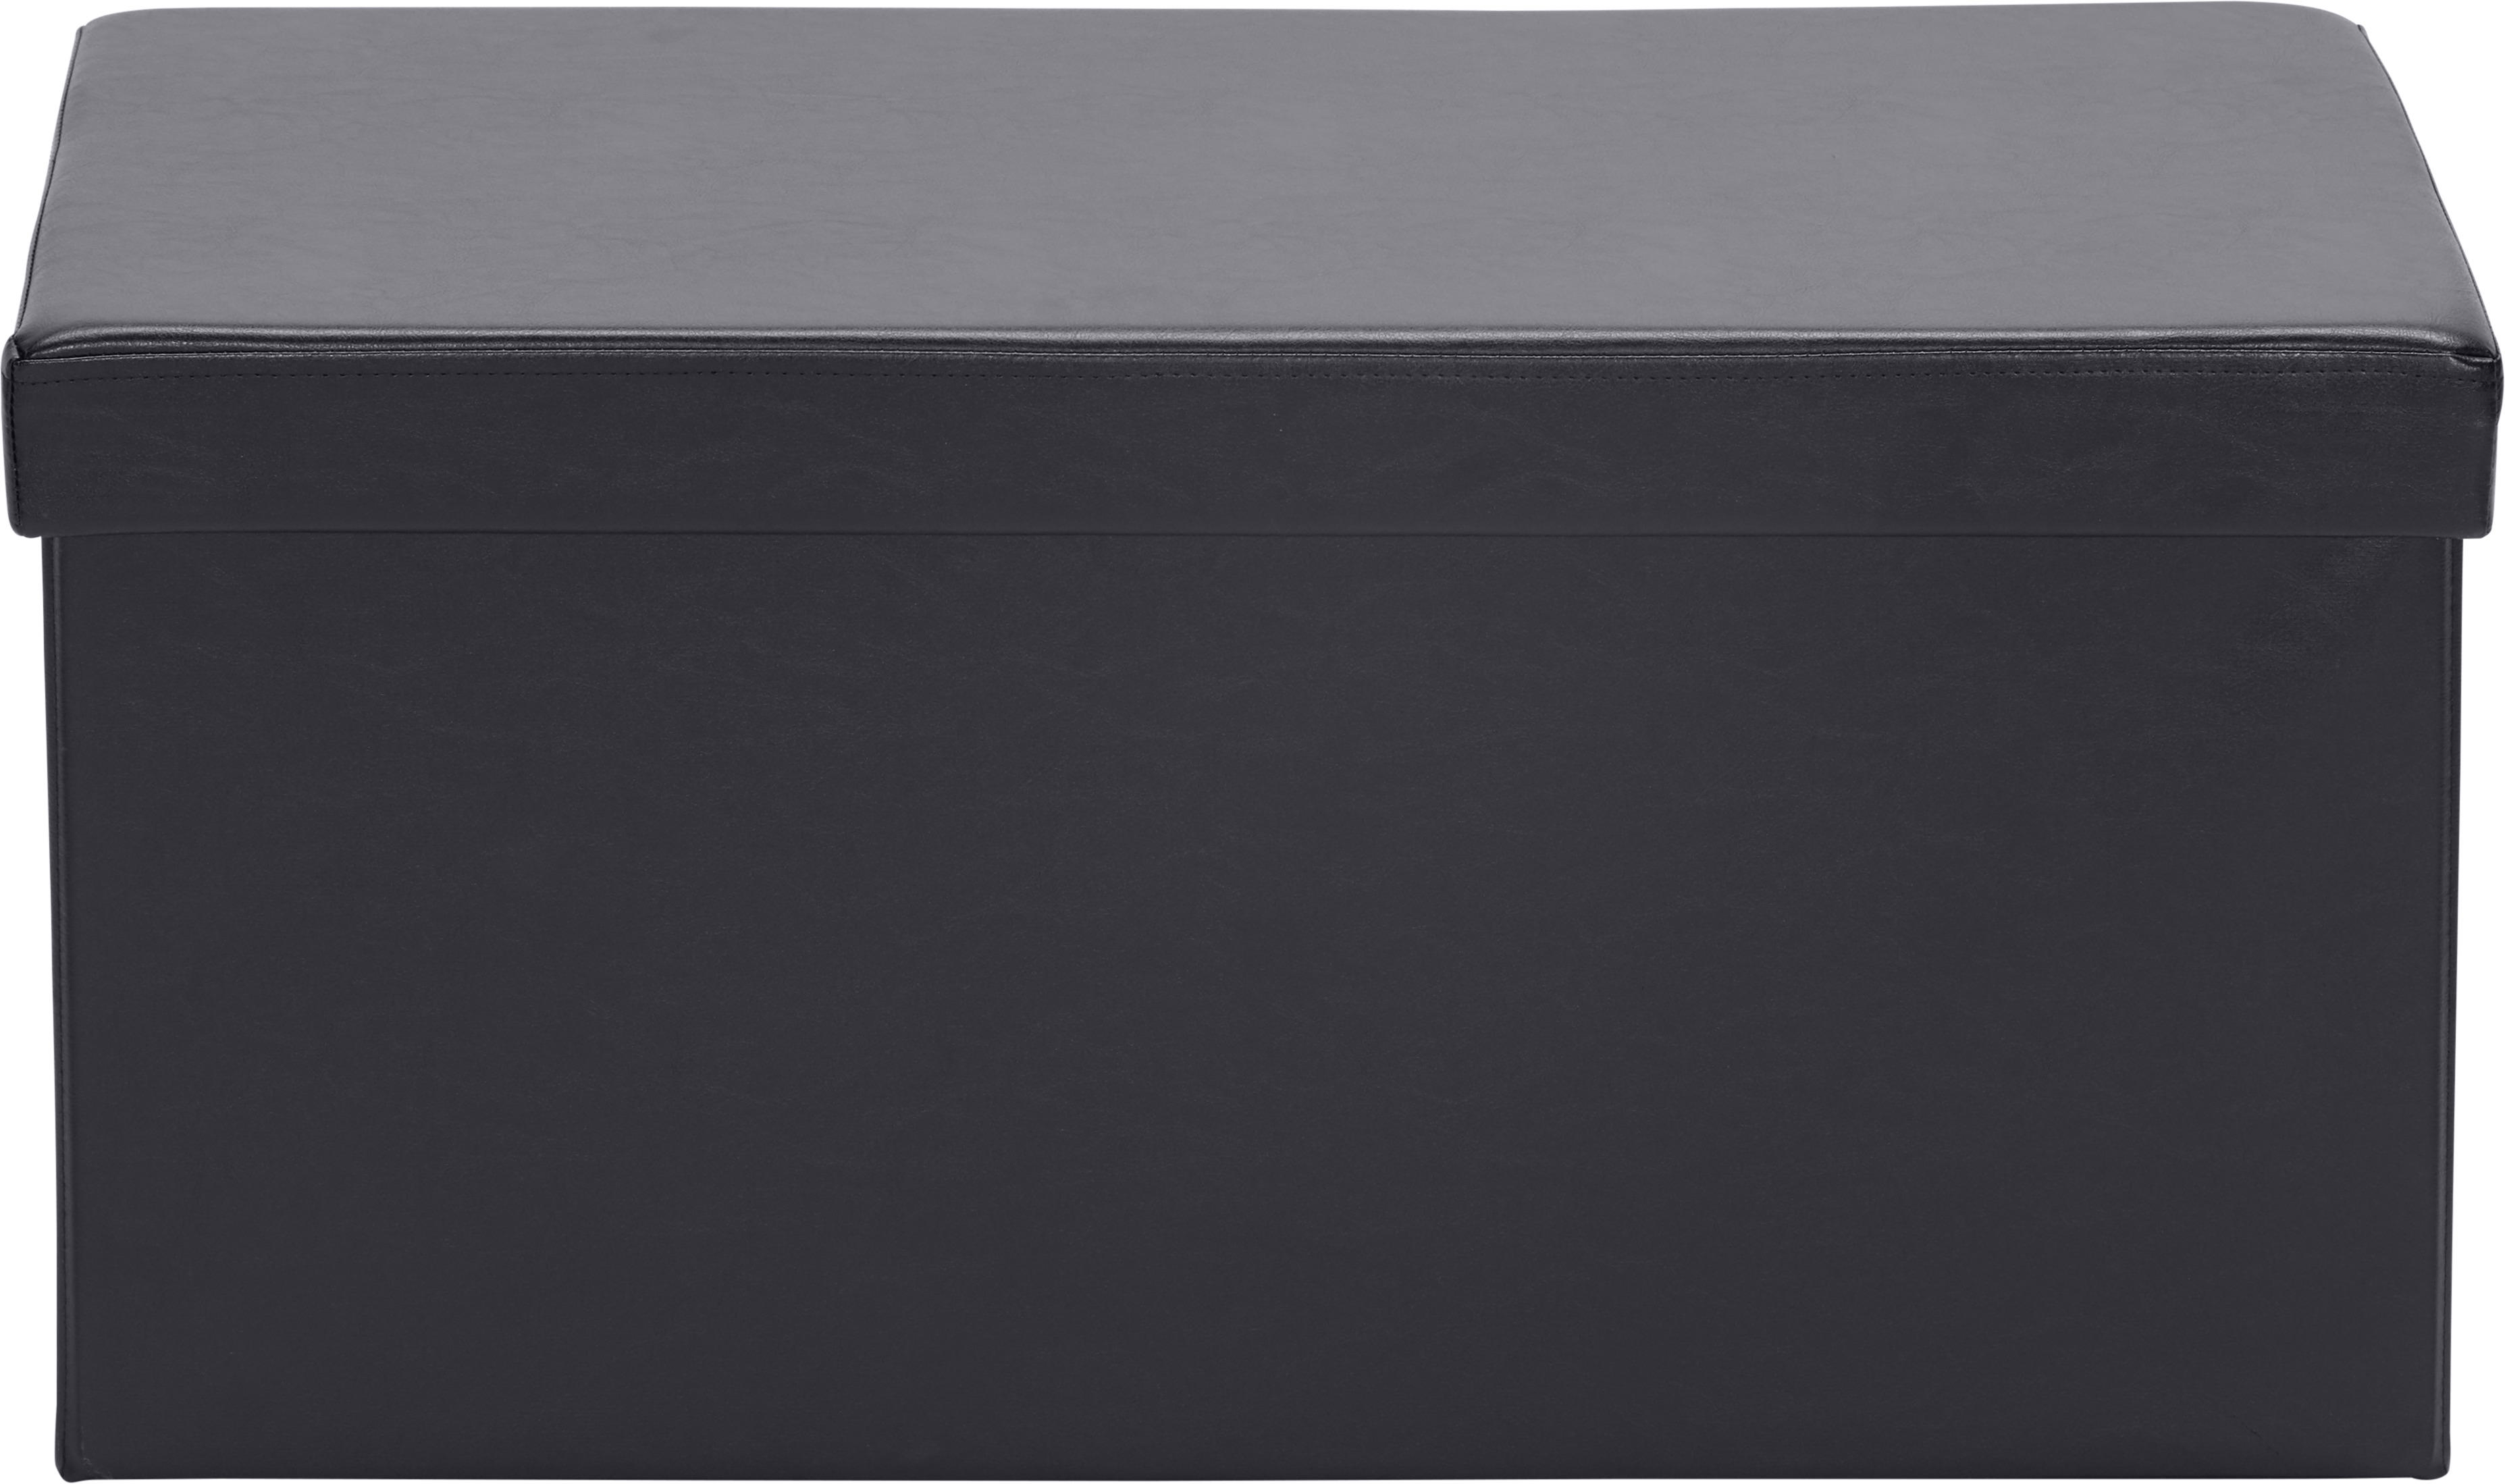 SITZBOX Lederlook, Vliesstoff Schwarz  - Schwarz, Design, Textil (76/38/38cm) - Carryhome